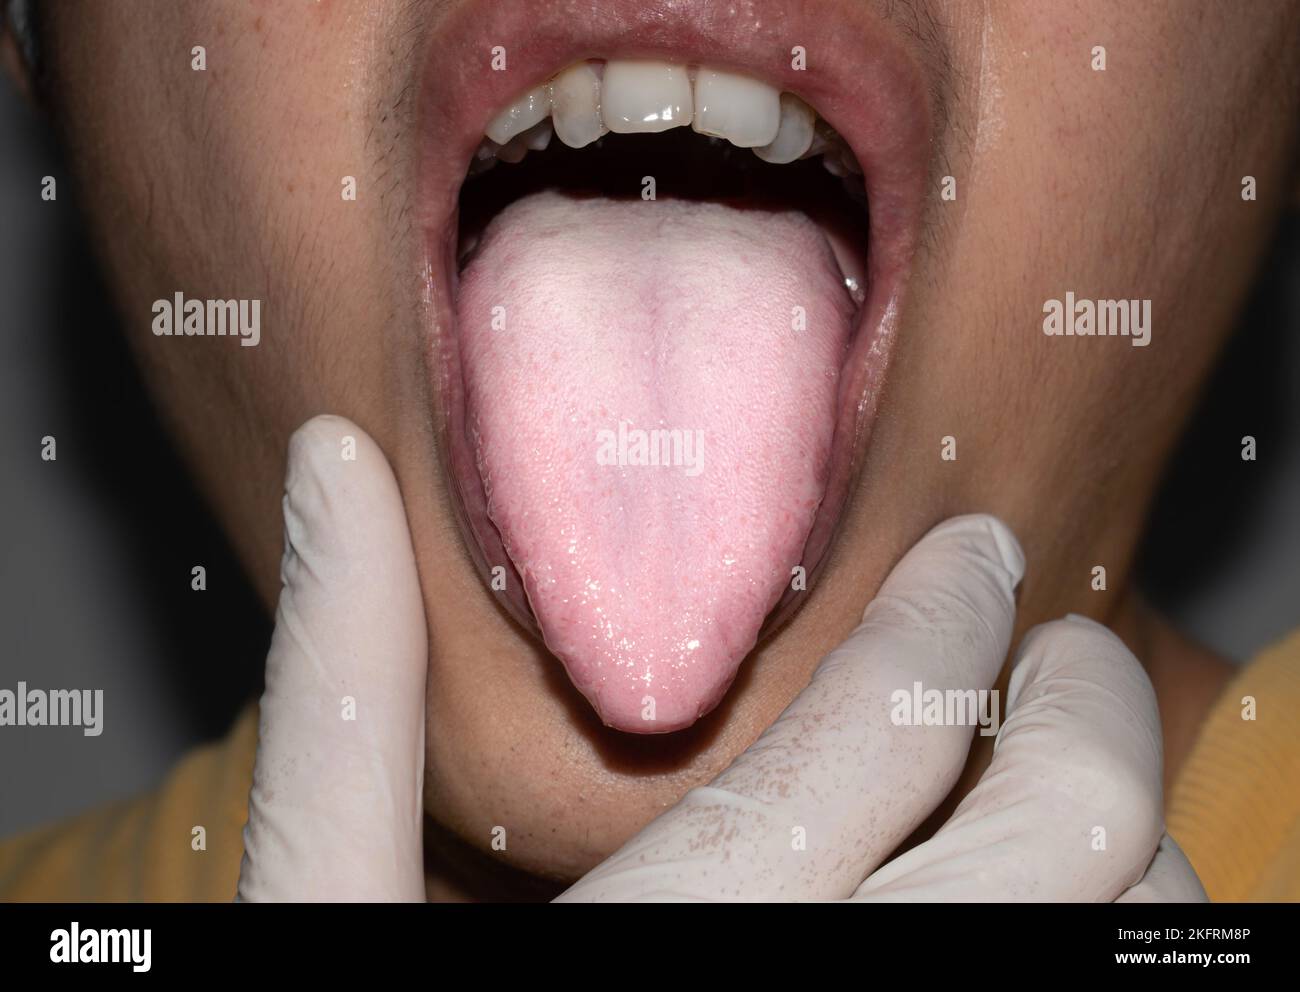 Beschichtete Zunge oder weiße Zunge eines asiatischen, chinesischen Mannes. Es erscheint mit einer weißen Schicht, wenn sich Rückstände, Bakterien und abgestorbene Zellen zwischen vergrößertem p absetzen Stockfoto